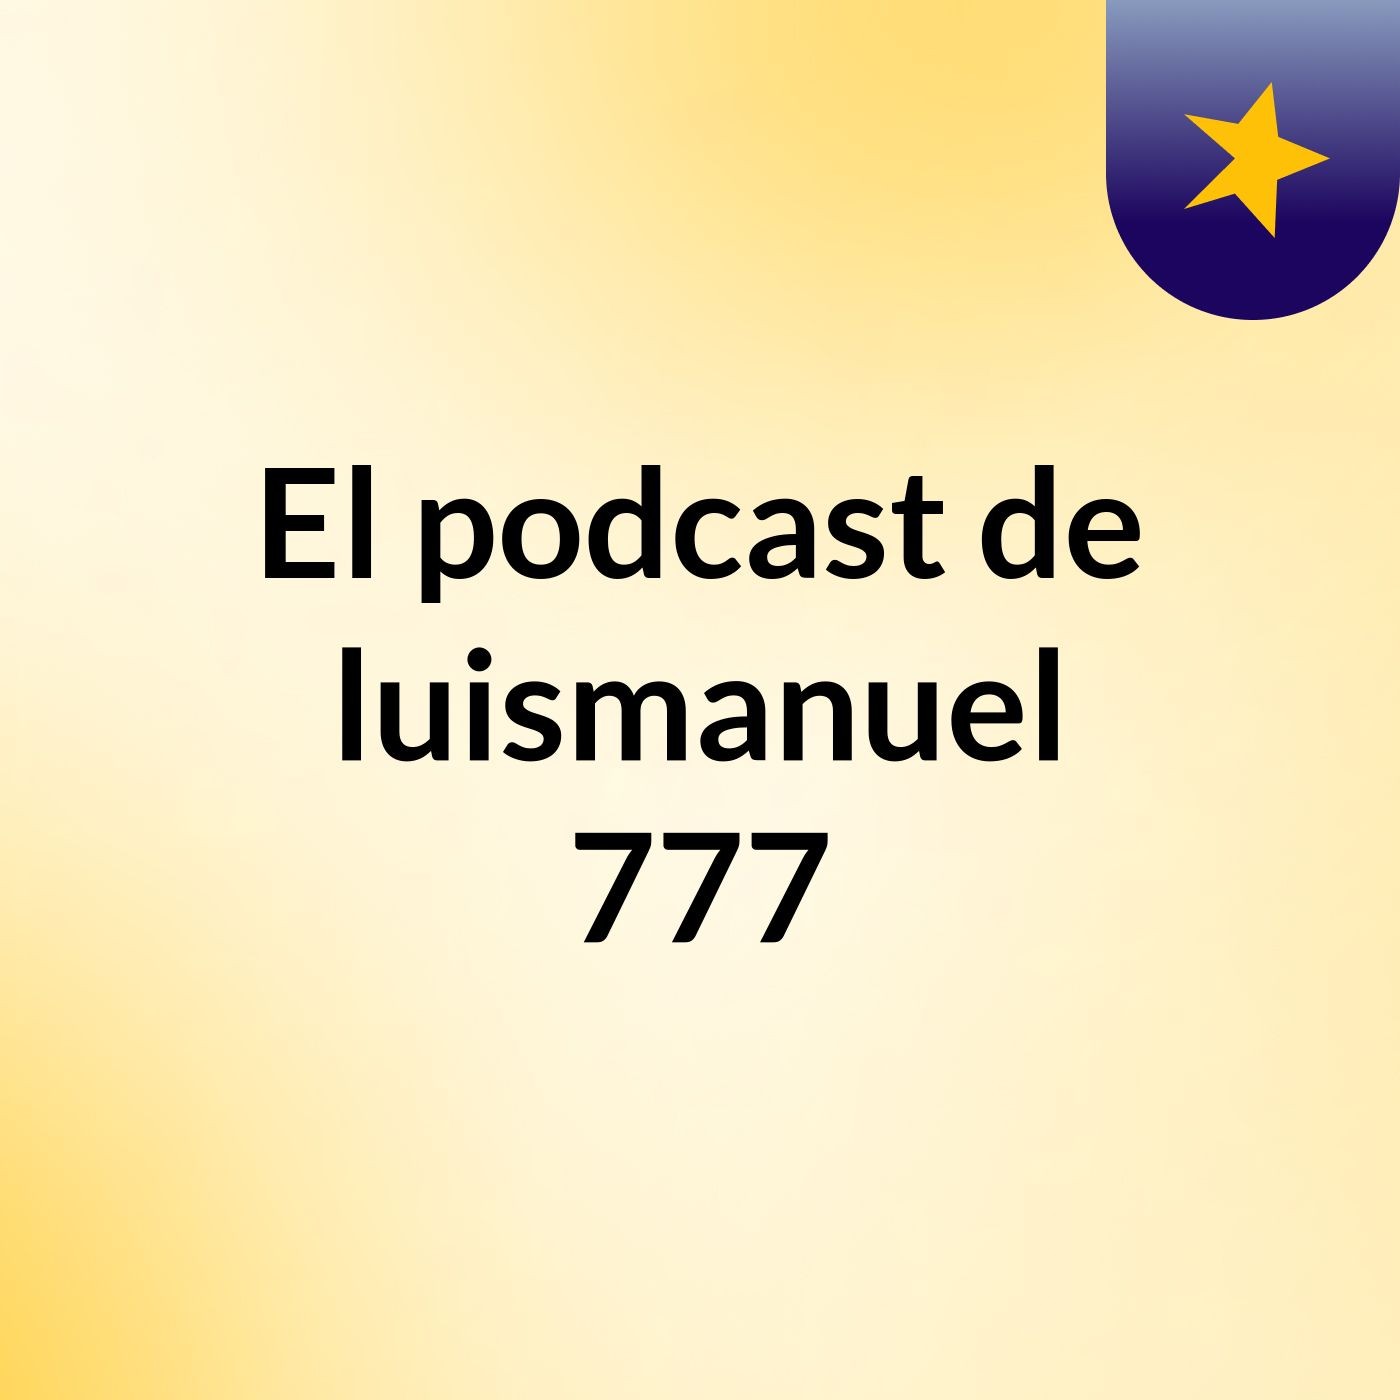 Episodio 2 - El podcast de luismanuel 777